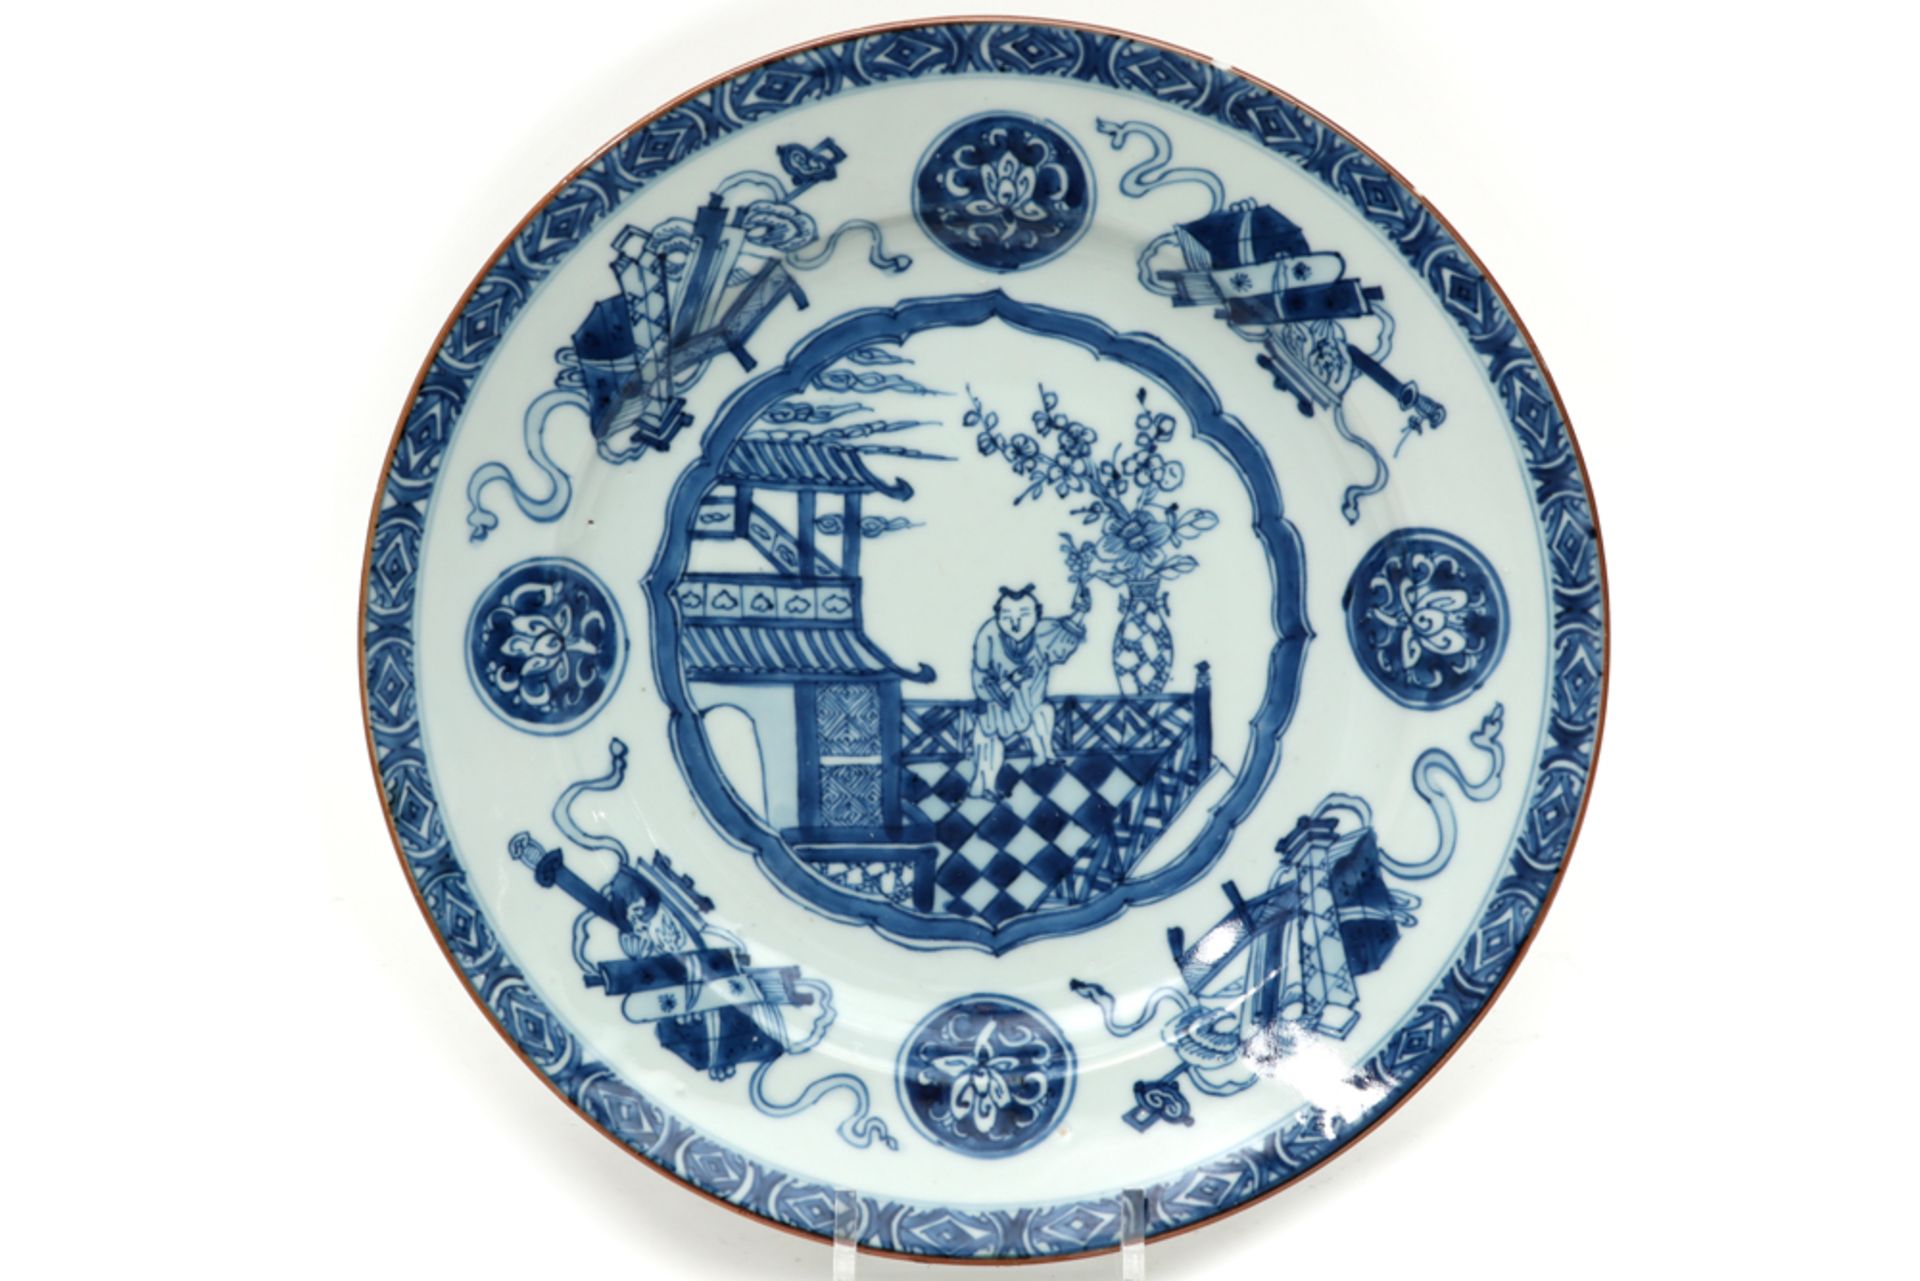 Achttiende eeuwse Chinese schaal in porselein met blauwwit decor met centraal een zgn "zotje"  -  di